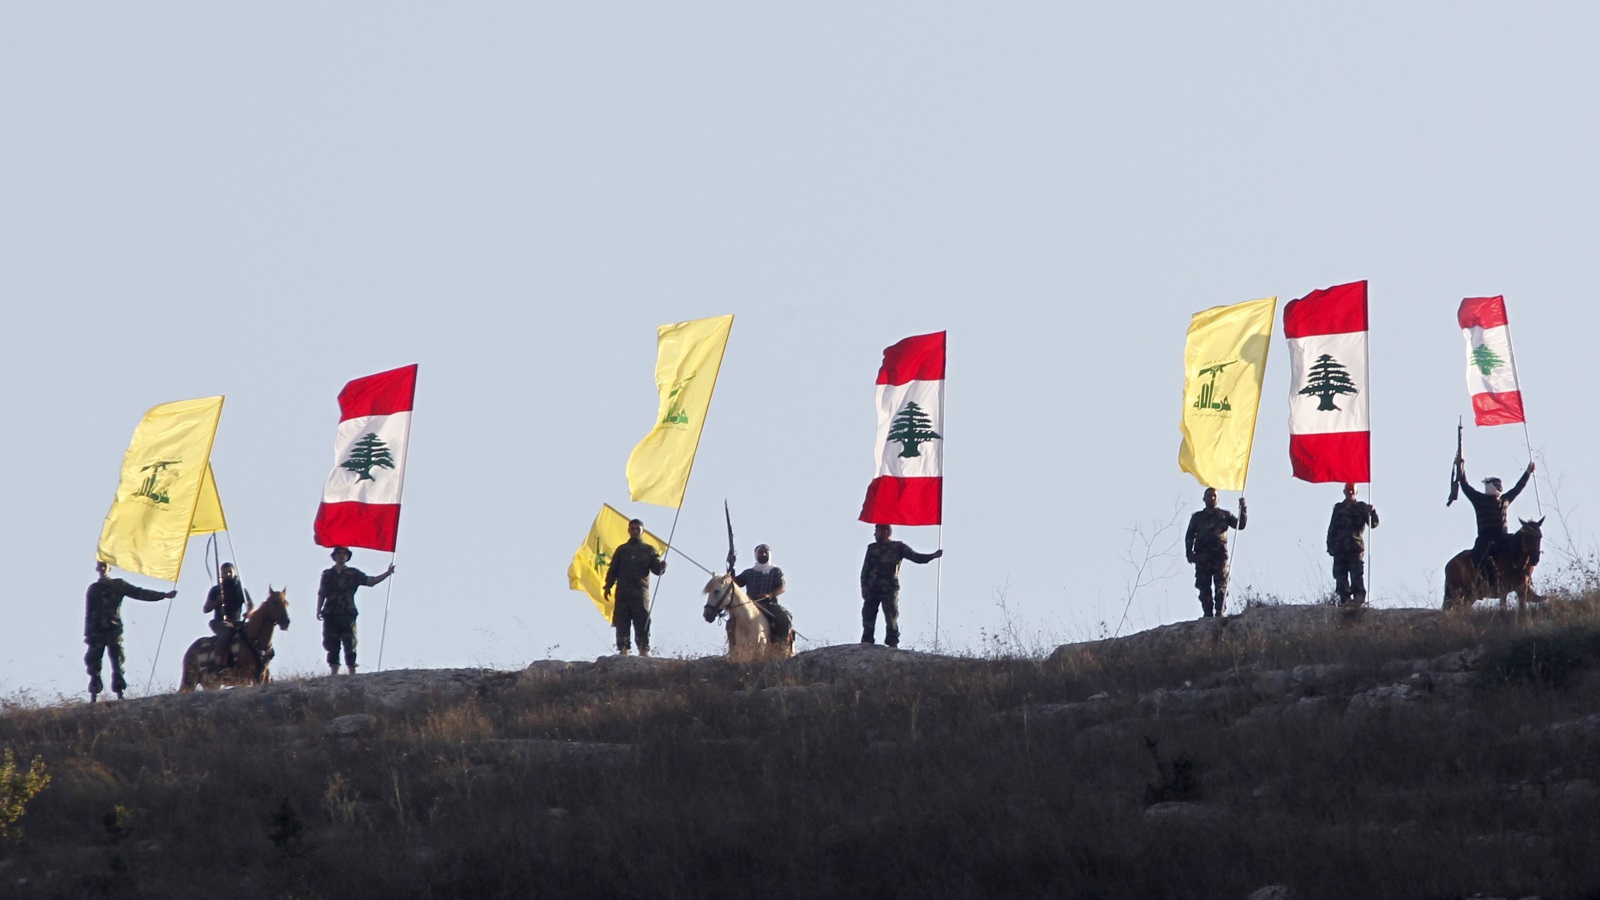 حزب الله جعل لبنان دولة خامسة في جيب المرشد الأعلى، مع ما يستتبع ذلك من تداعيات الاندماج بالثقافة الخمينية، وانهزام واضح للدور الرسالي الذي اشتهر به لبنان